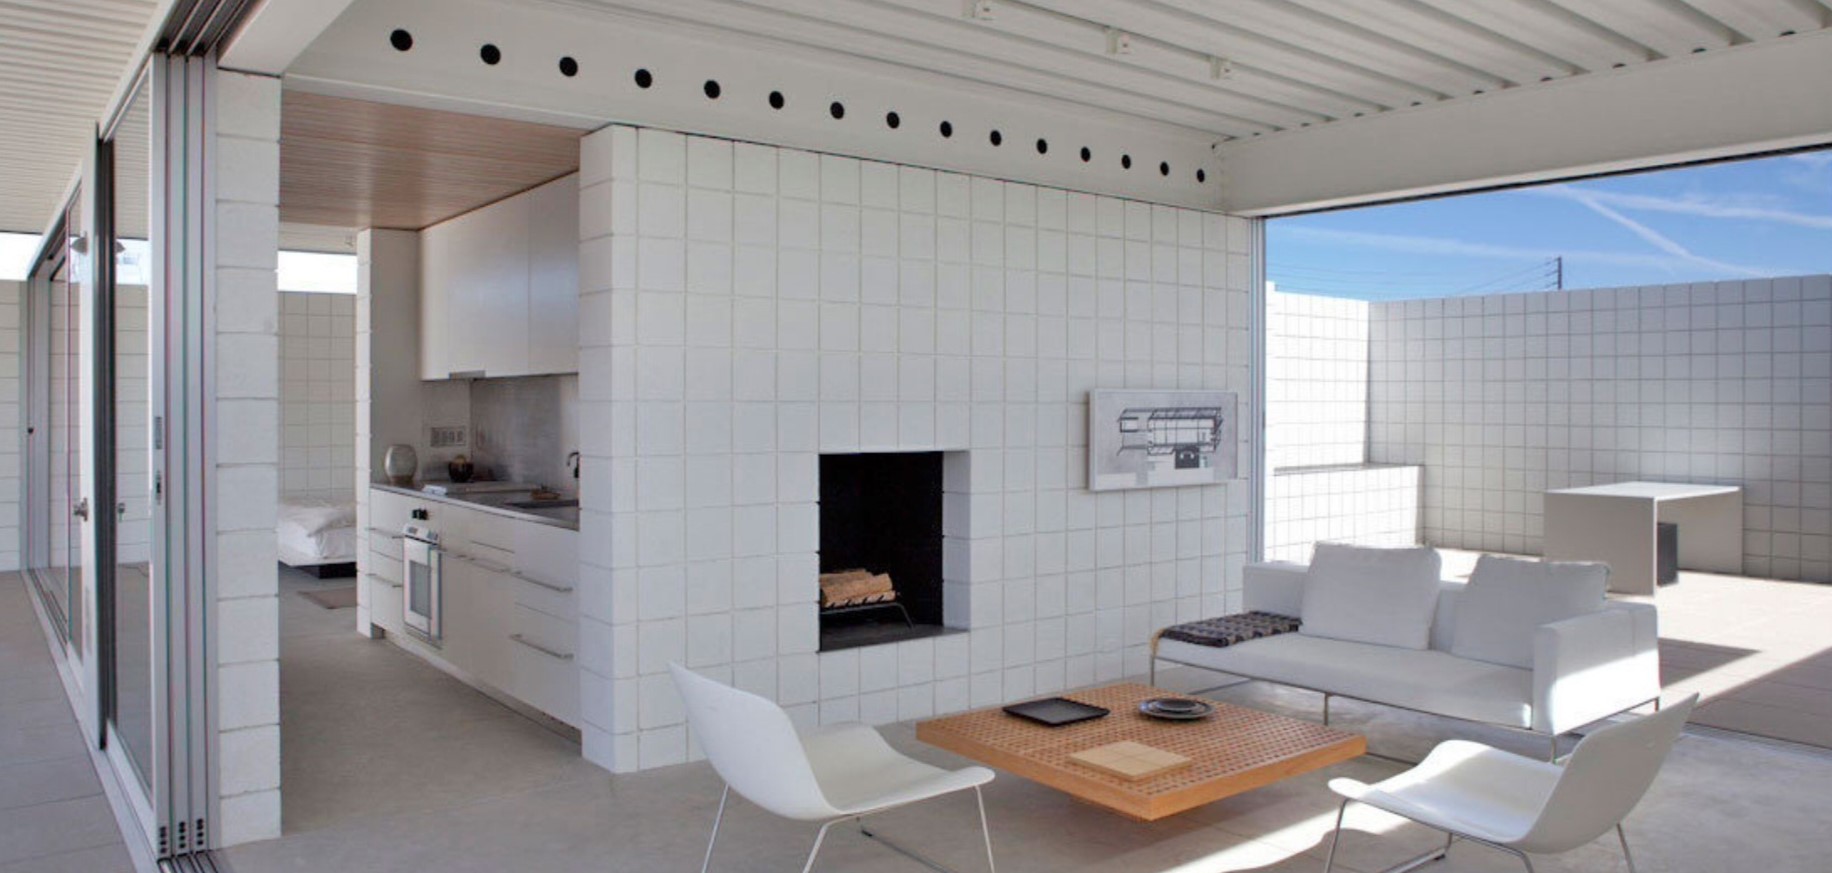 Алюминиевые потолки подходят по современный стиль интерьера